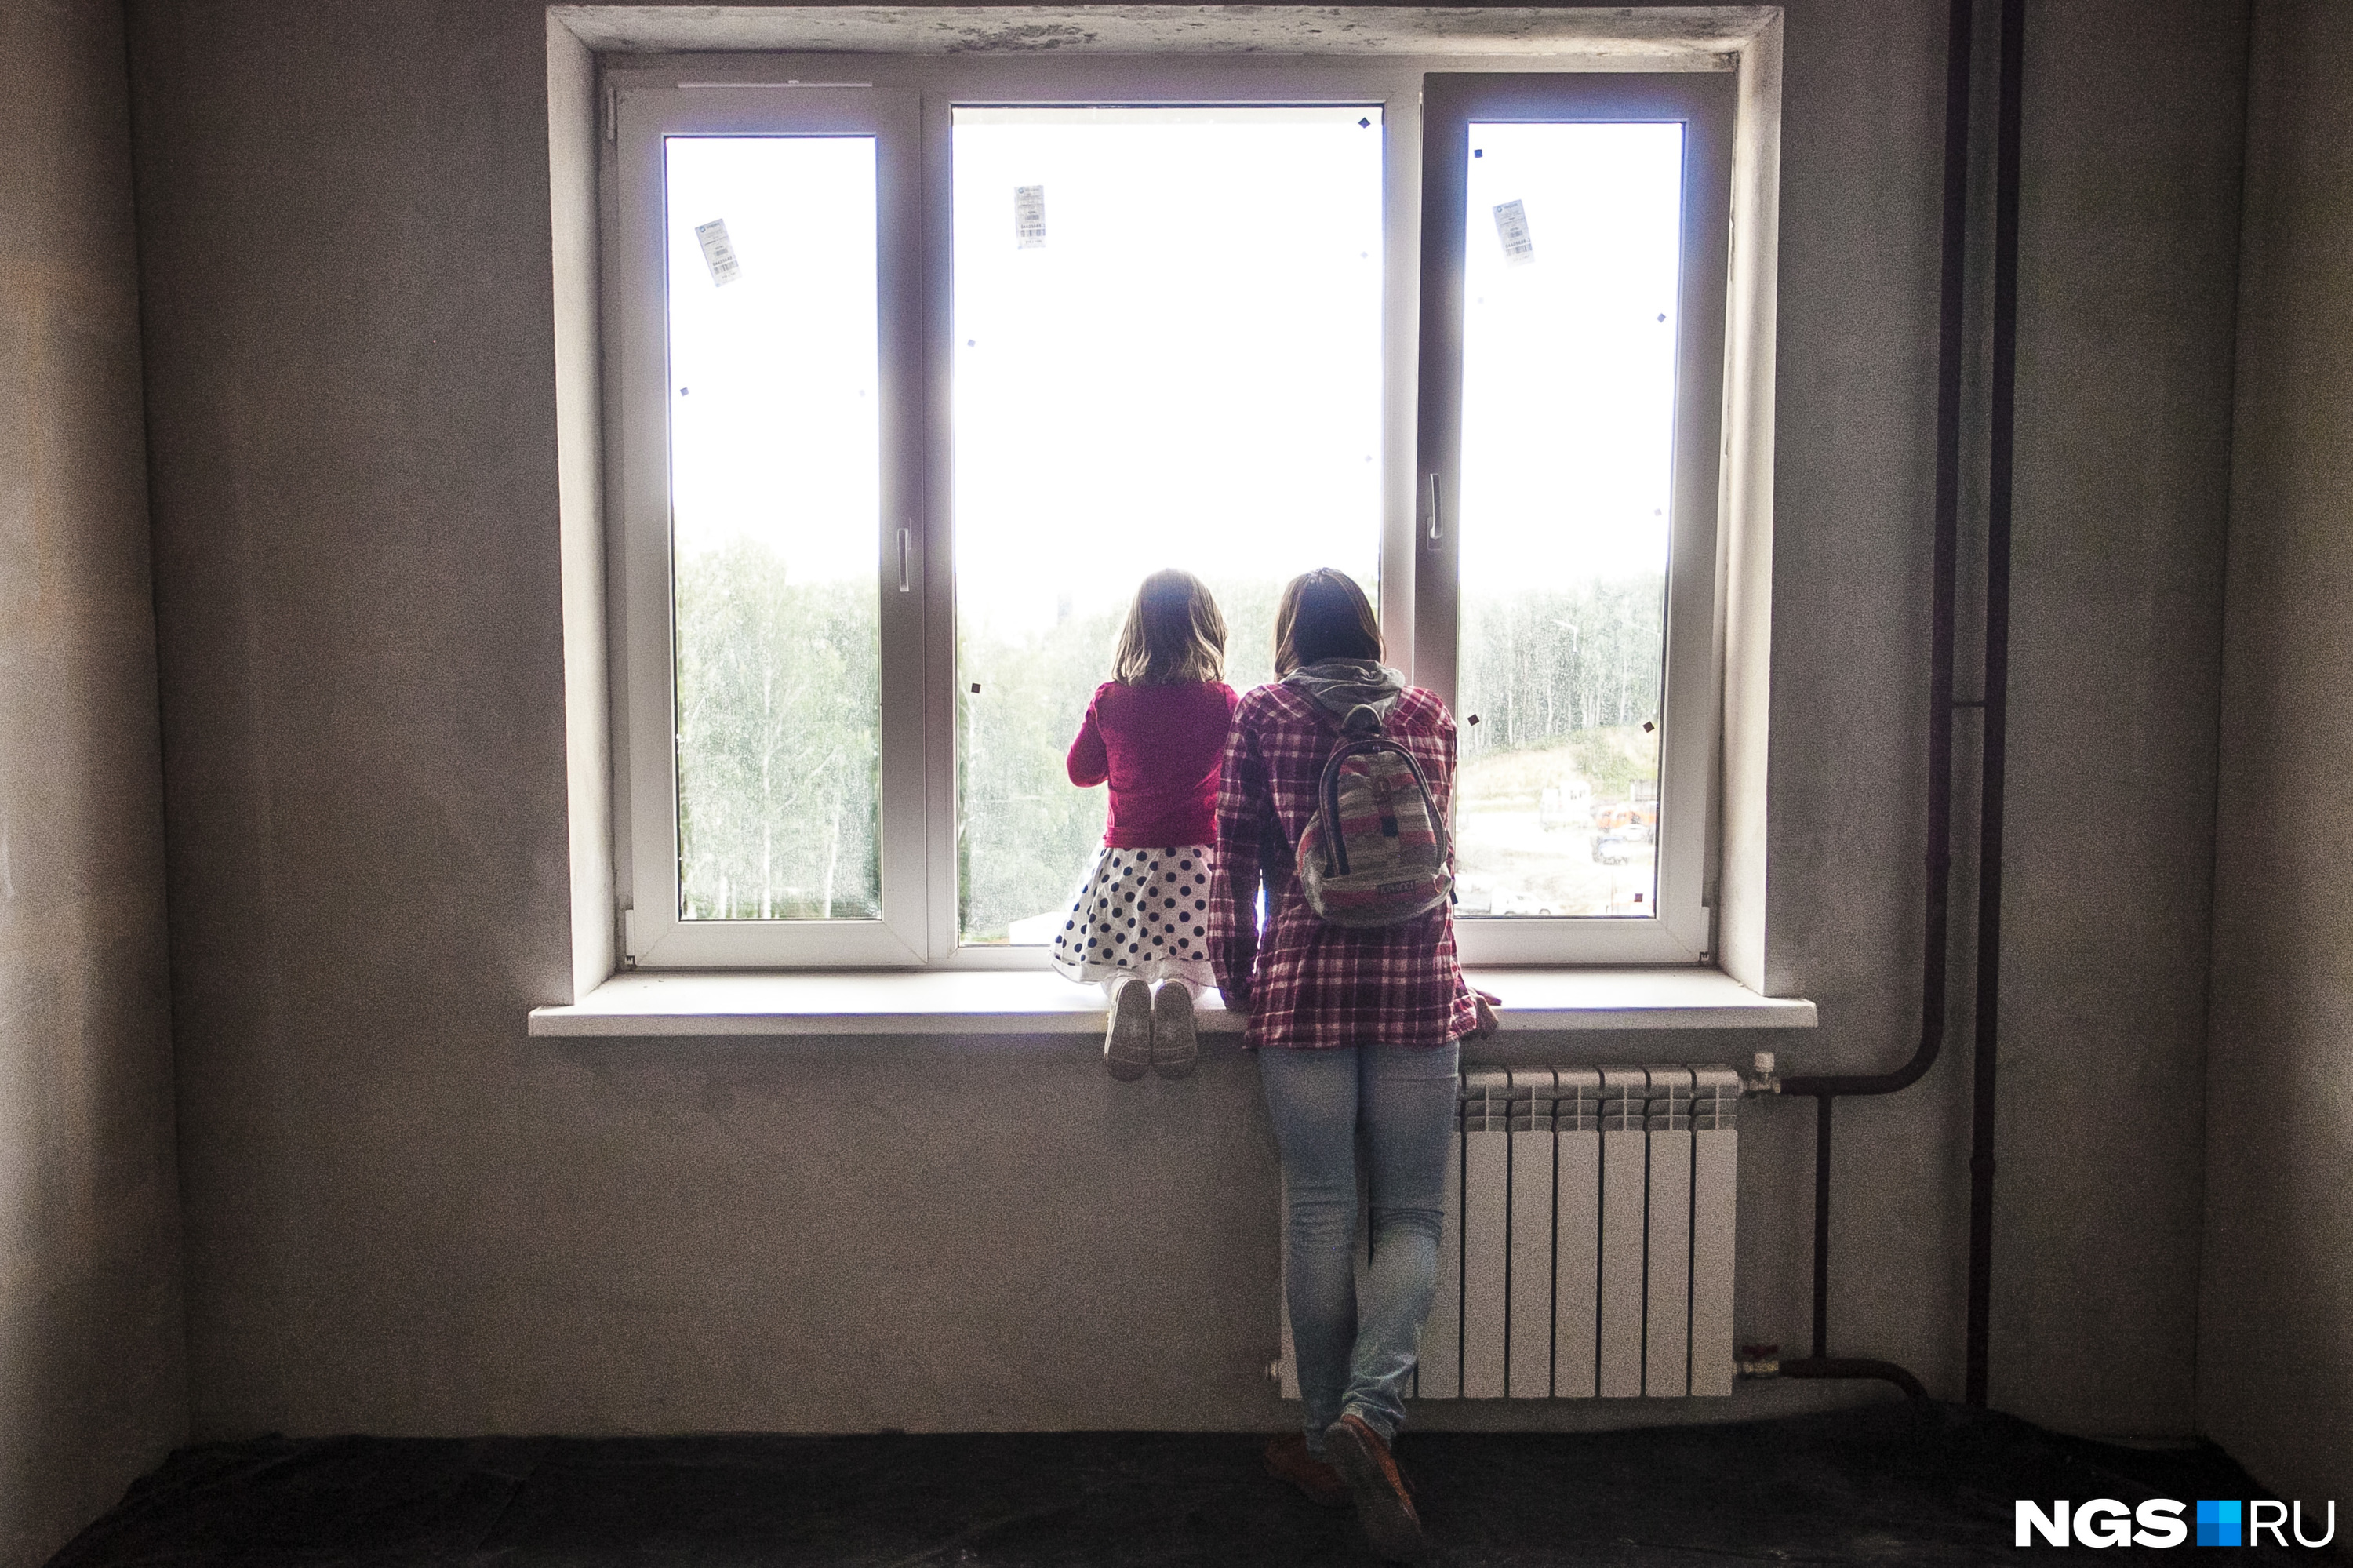 Трехлетний ребенок выпал из окна девятого этажа в Кузбассе — он умер в больнице